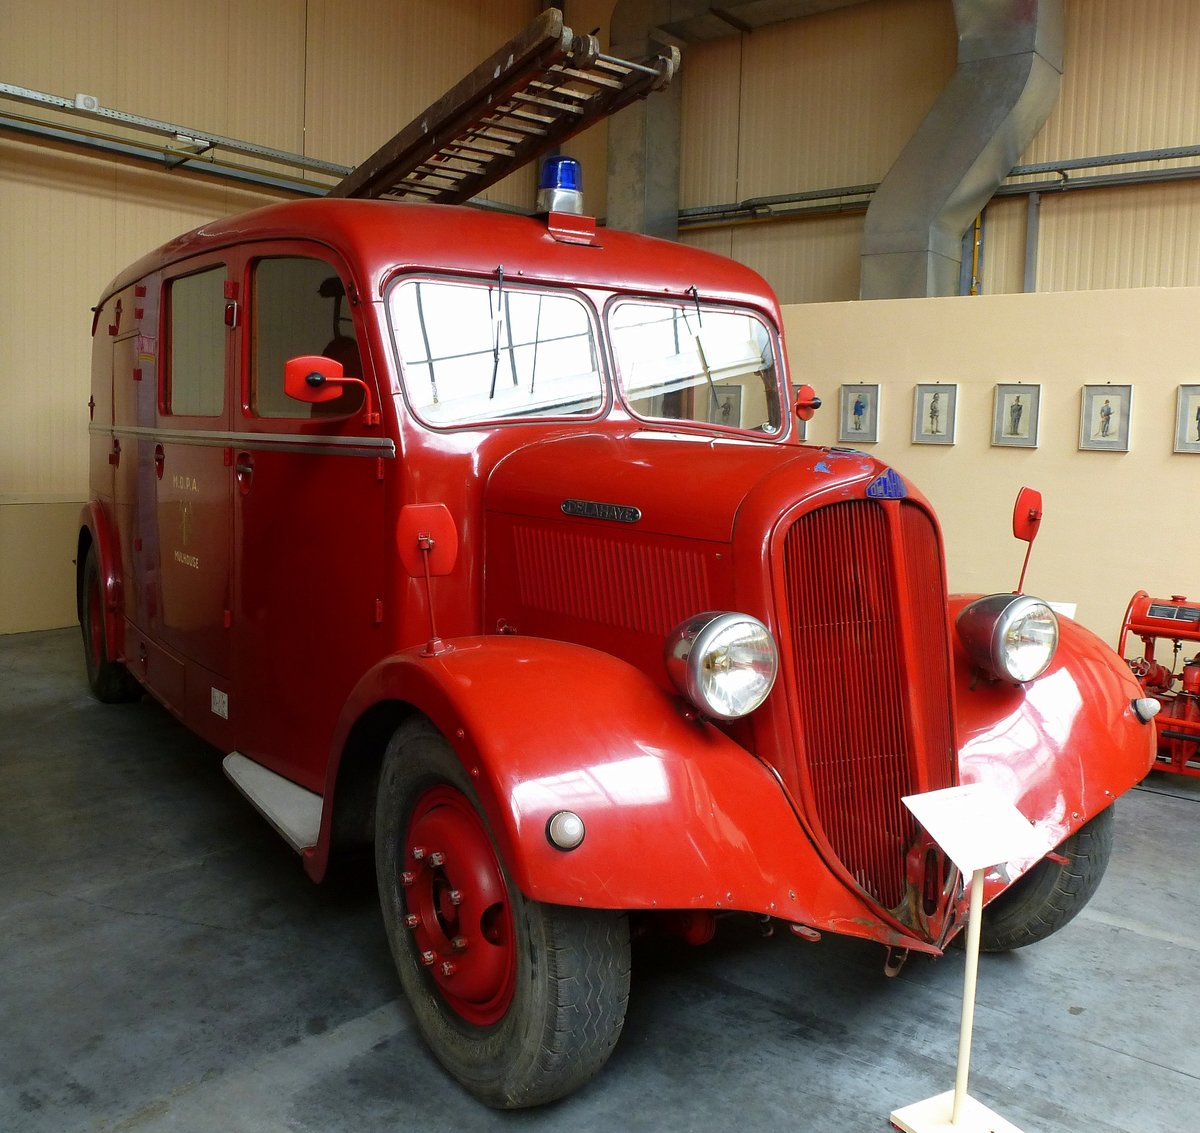 Delahaye 103 AP, Feuerwehrmannschaftswagen mit 12 Plätzen, ausgestellt im Feuerwehrmuseum in Vieux-Ferrette (Altenpfirt) im Elsaß, Mai 2016